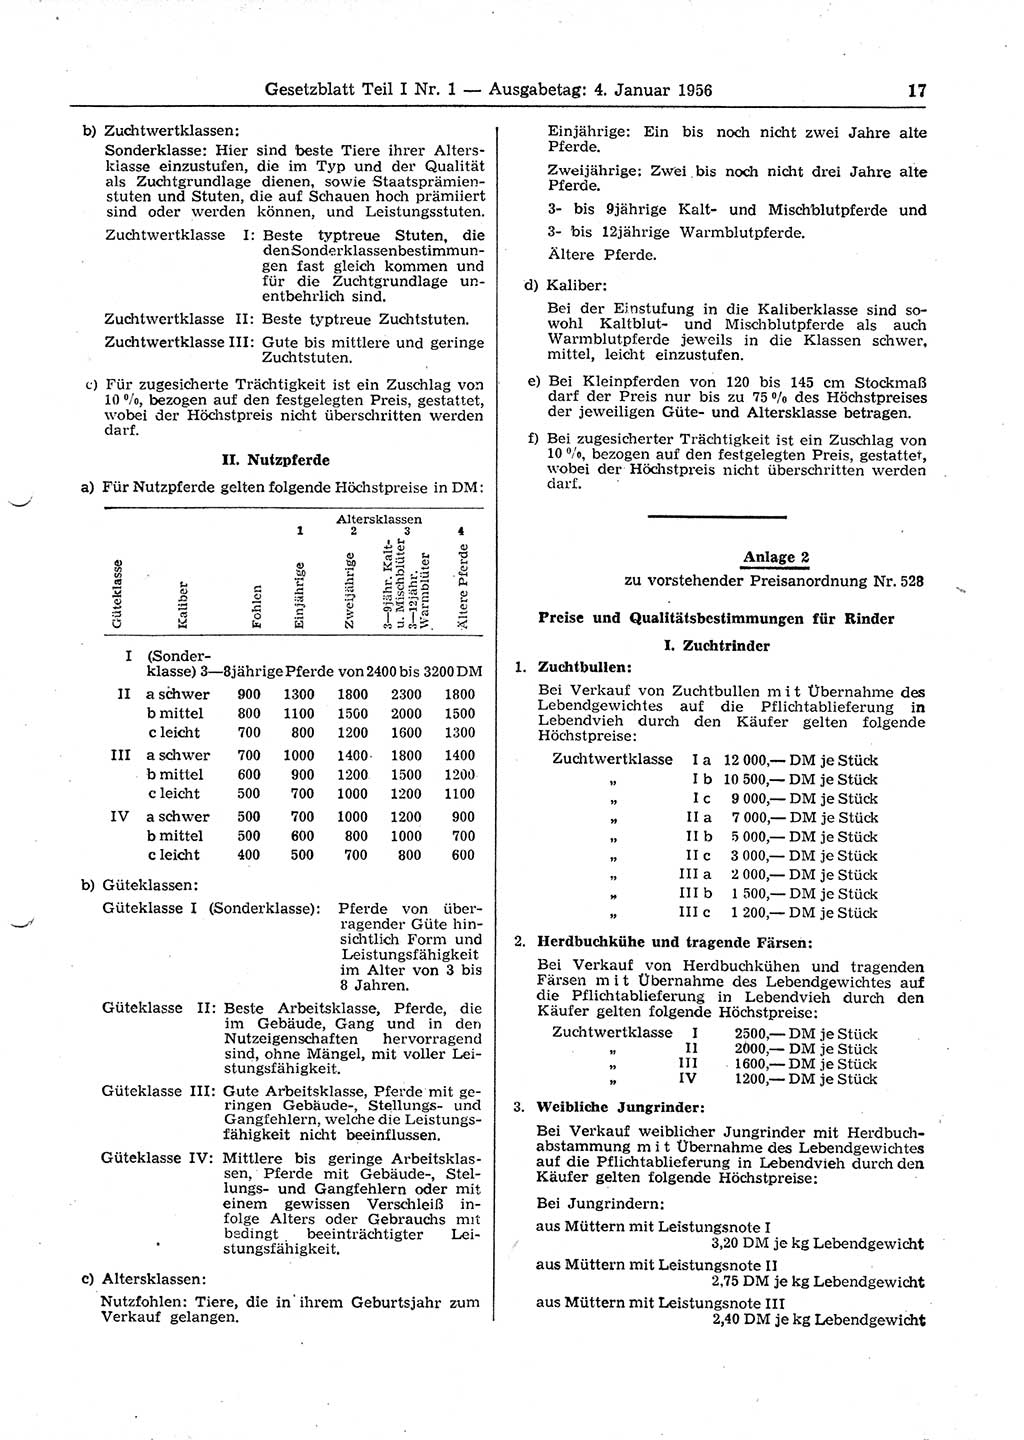 Gesetzblatt (GBl.) der Deutschen Demokratischen Republik (DDR) Teil Ⅰ 1956, Seite 17 (GBl. DDR Ⅰ 1956, S. 17)